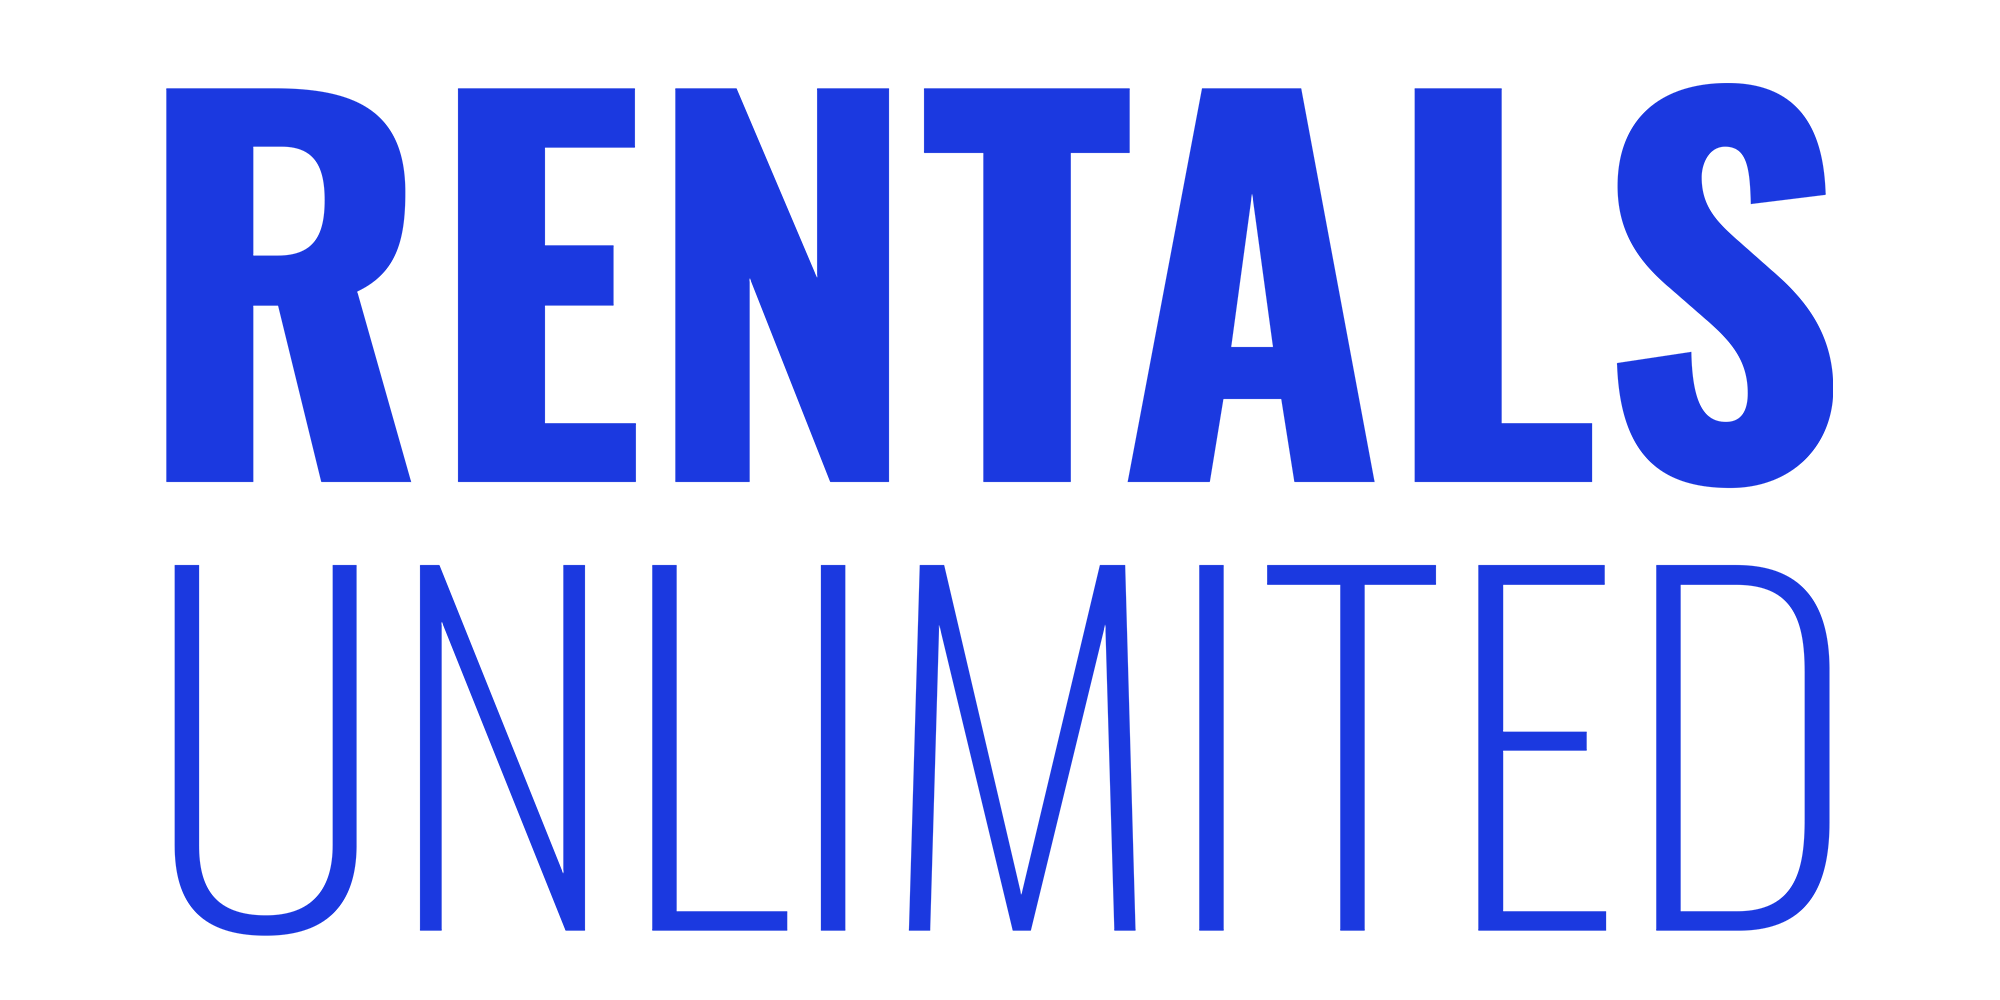 Rentals Unlimited